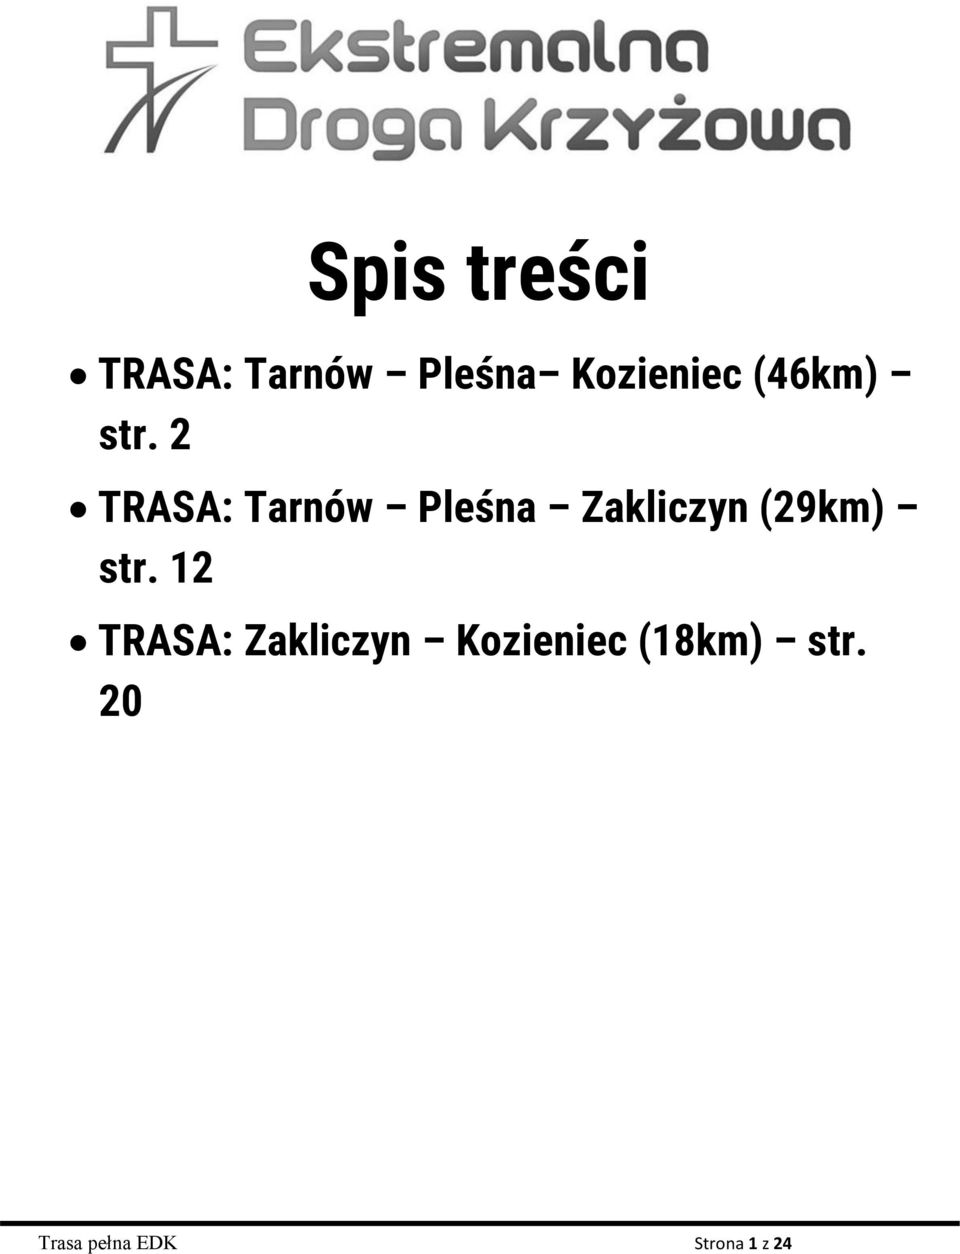 2 TRASA: Tarnów Pleśna Zakliczyn (29km) str.